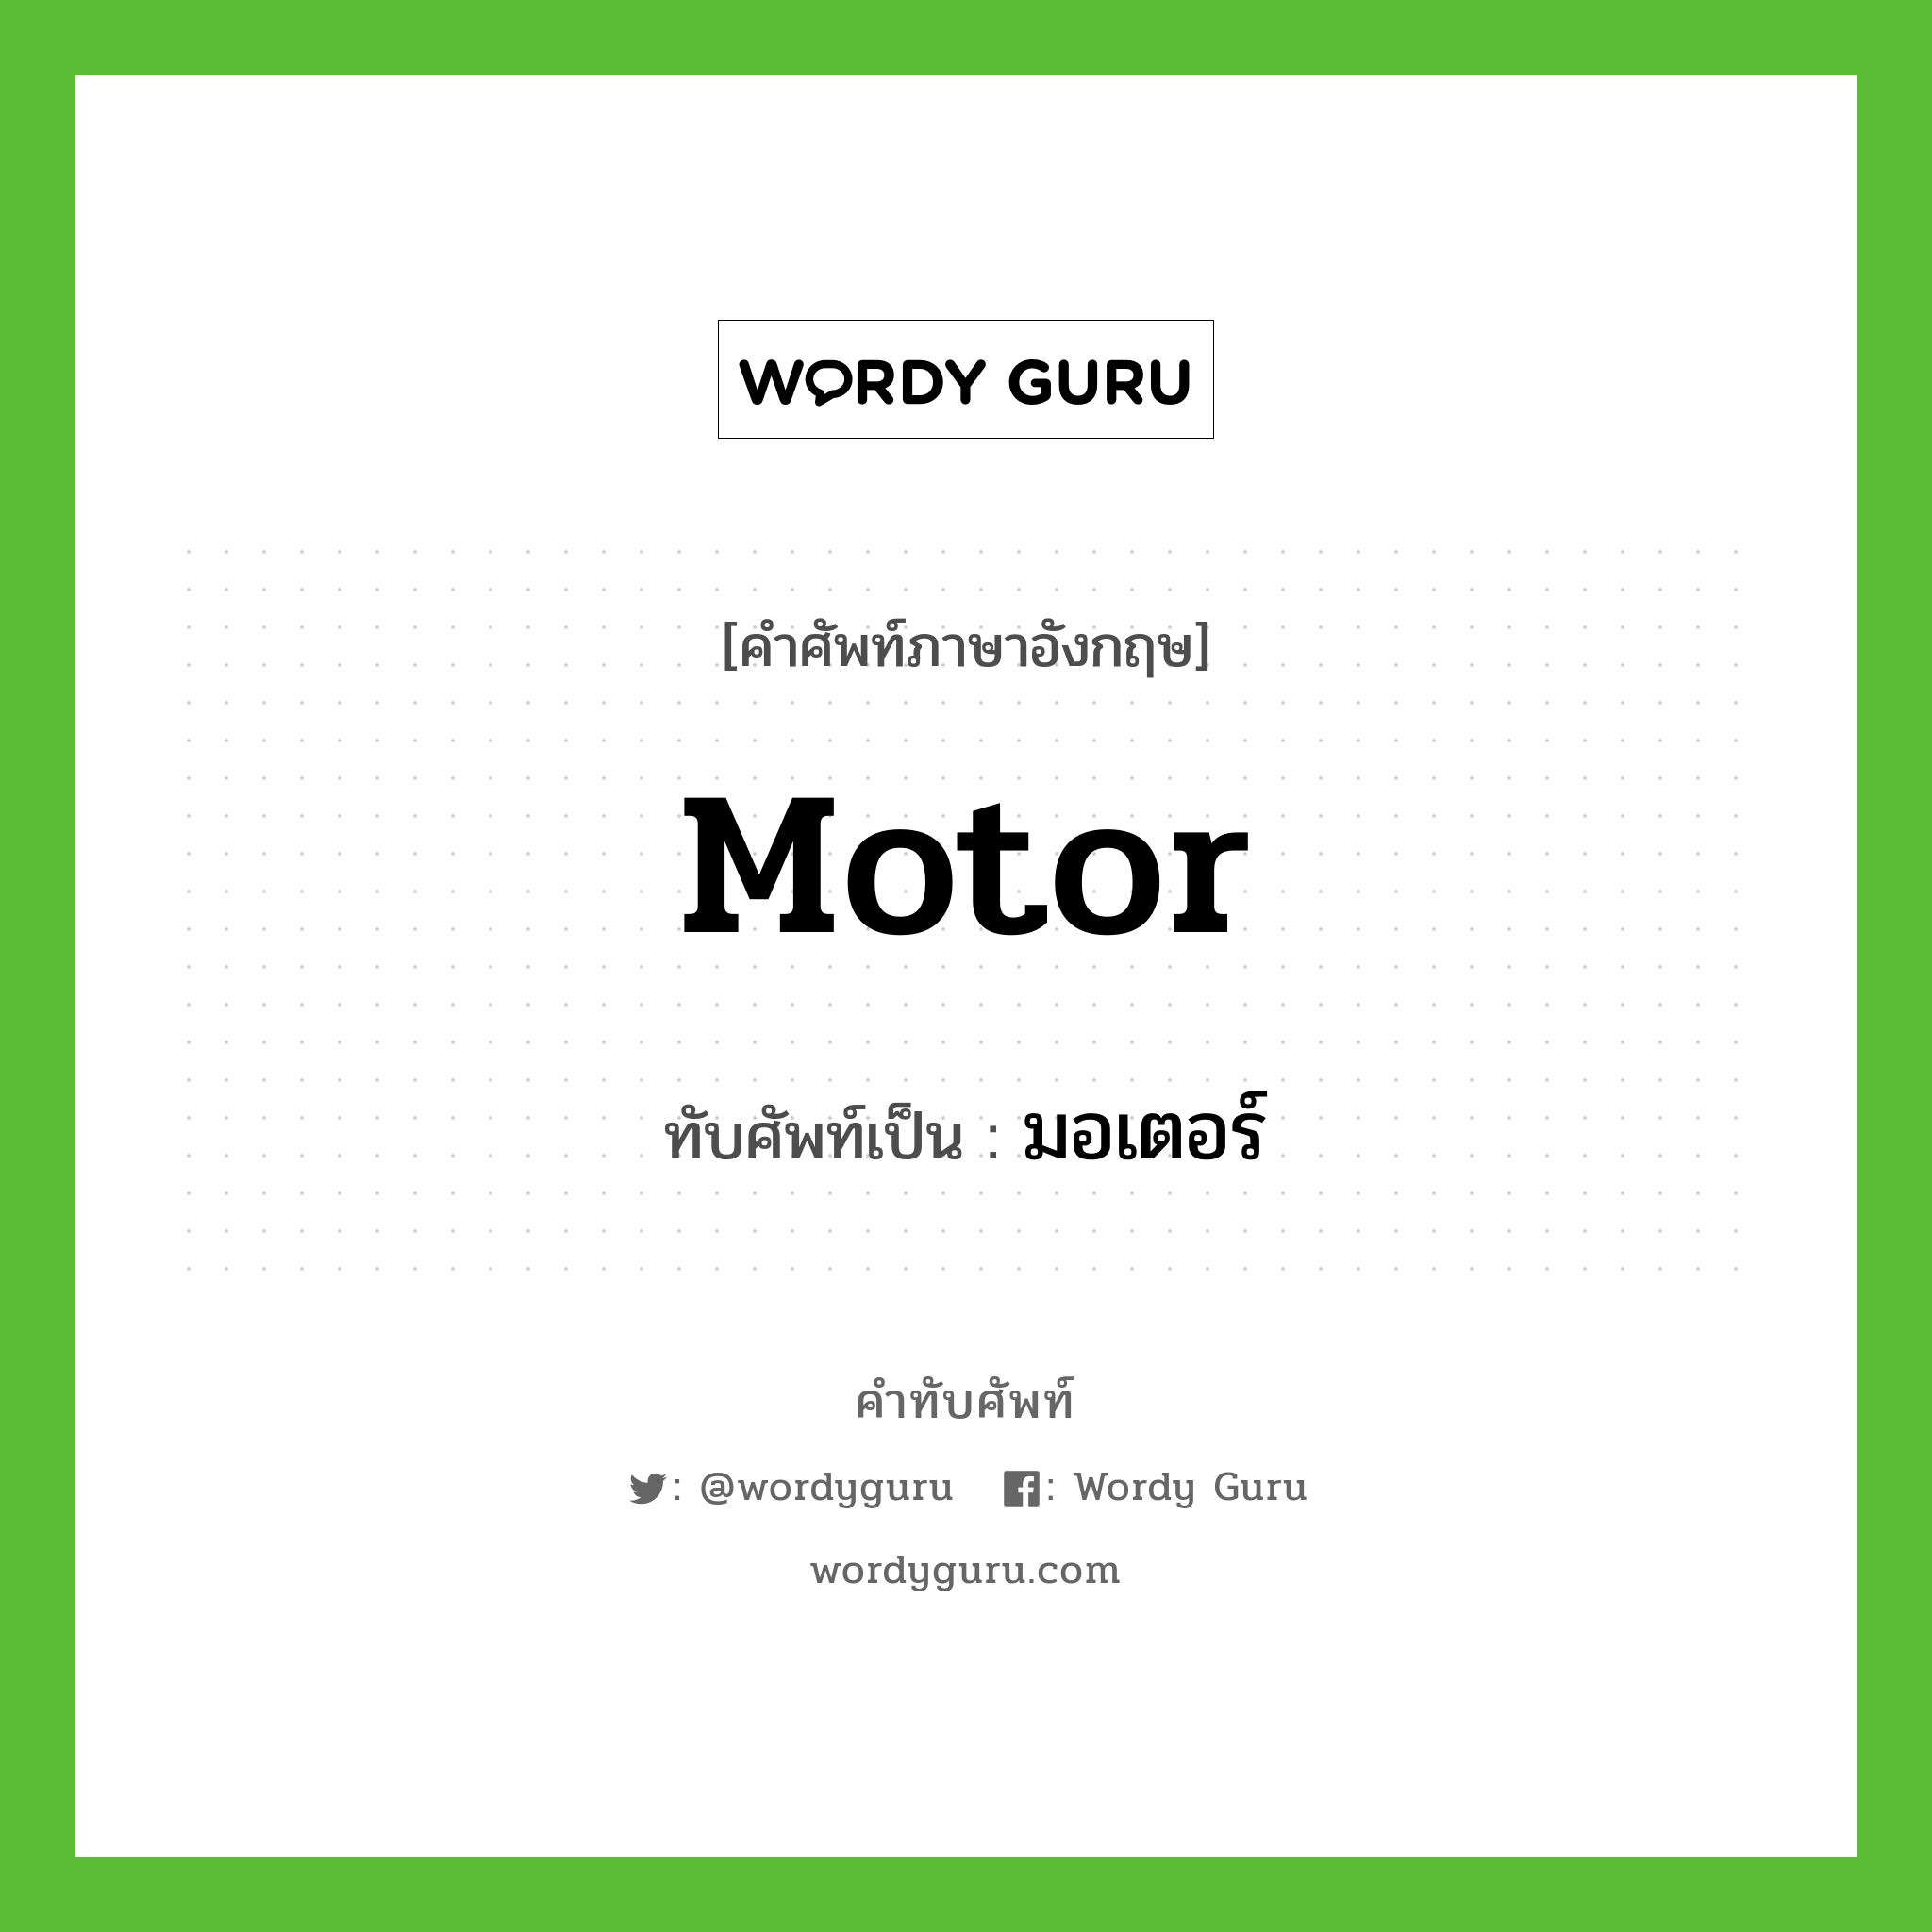 motor เขียนเป็นคำไทยว่าอะไร?, คำศัพท์ภาษาอังกฤษ motor ทับศัพท์เป็น มอเตอร์